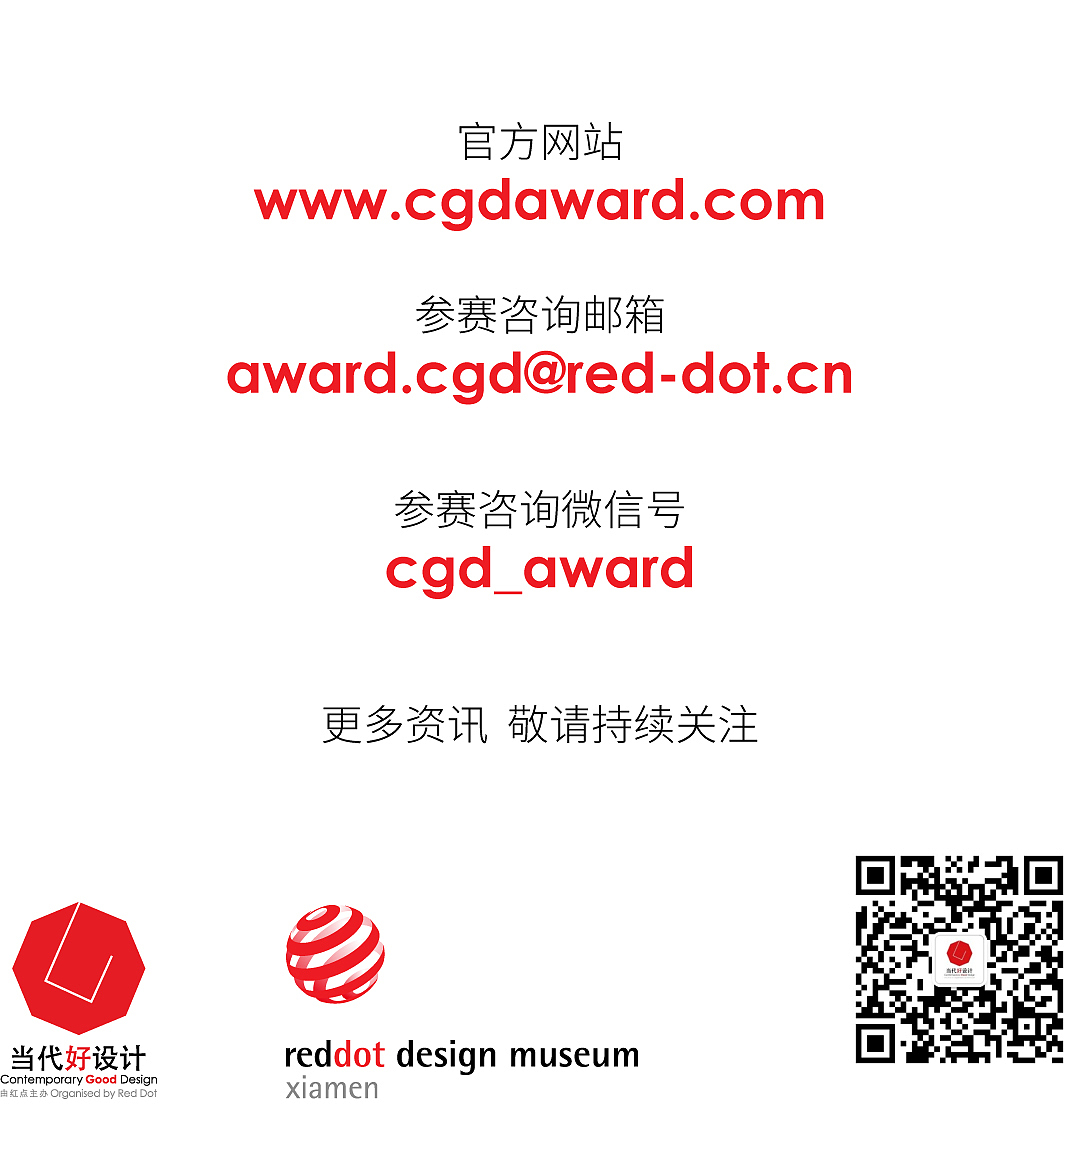 CGD当代好设计奖，获奖作品，室内设计，